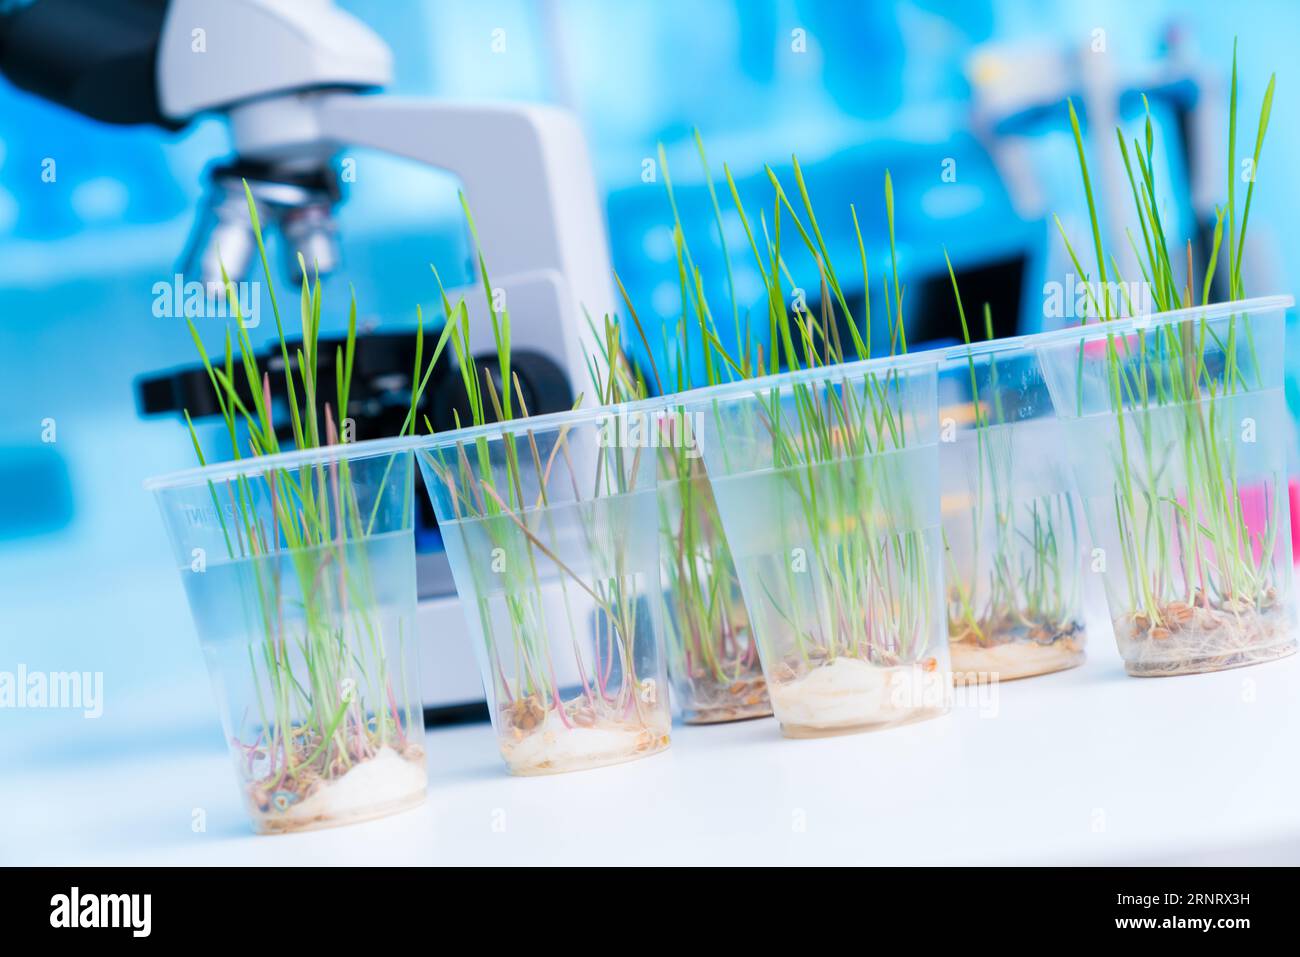 Untersuchung des Einflusses unterschiedlicher Nährstofflösungen auf die Wurzelentwicklung: Bei diesem Experiment werden Pflanzen verschiedenen Nährstofflösungen ausgesetzt Stockfoto